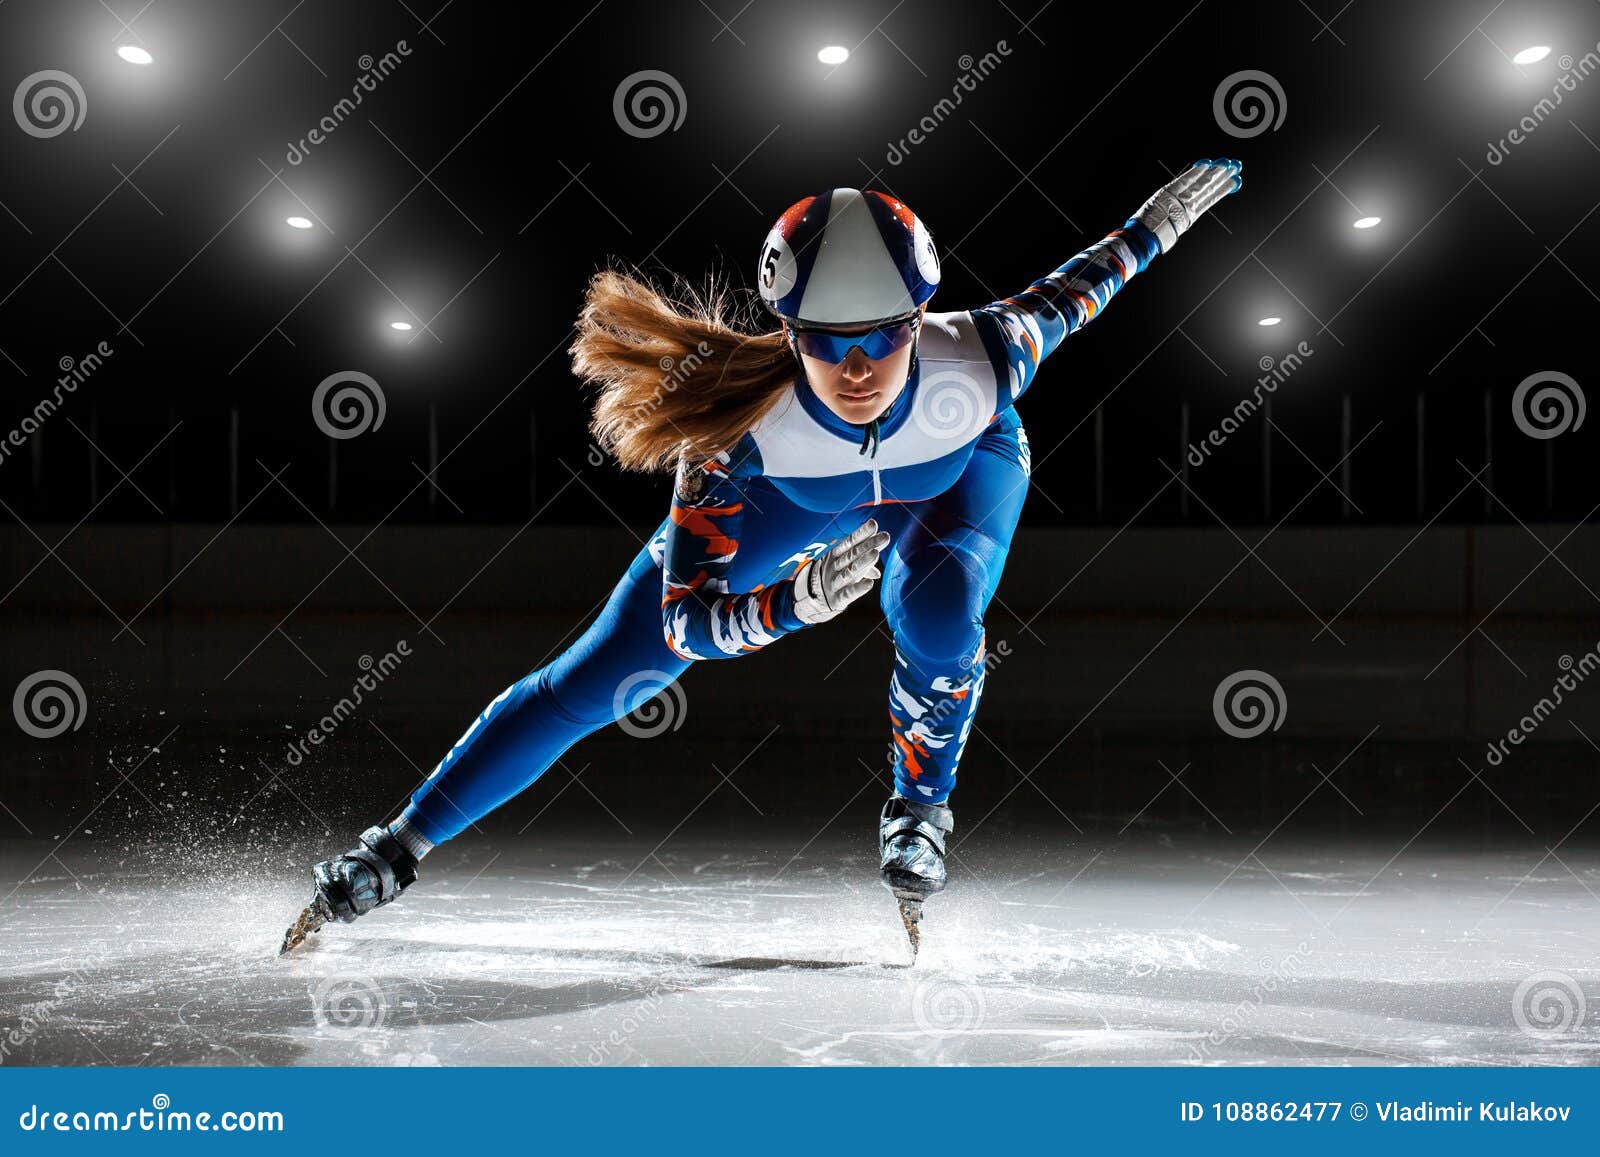 short track athlete on ice